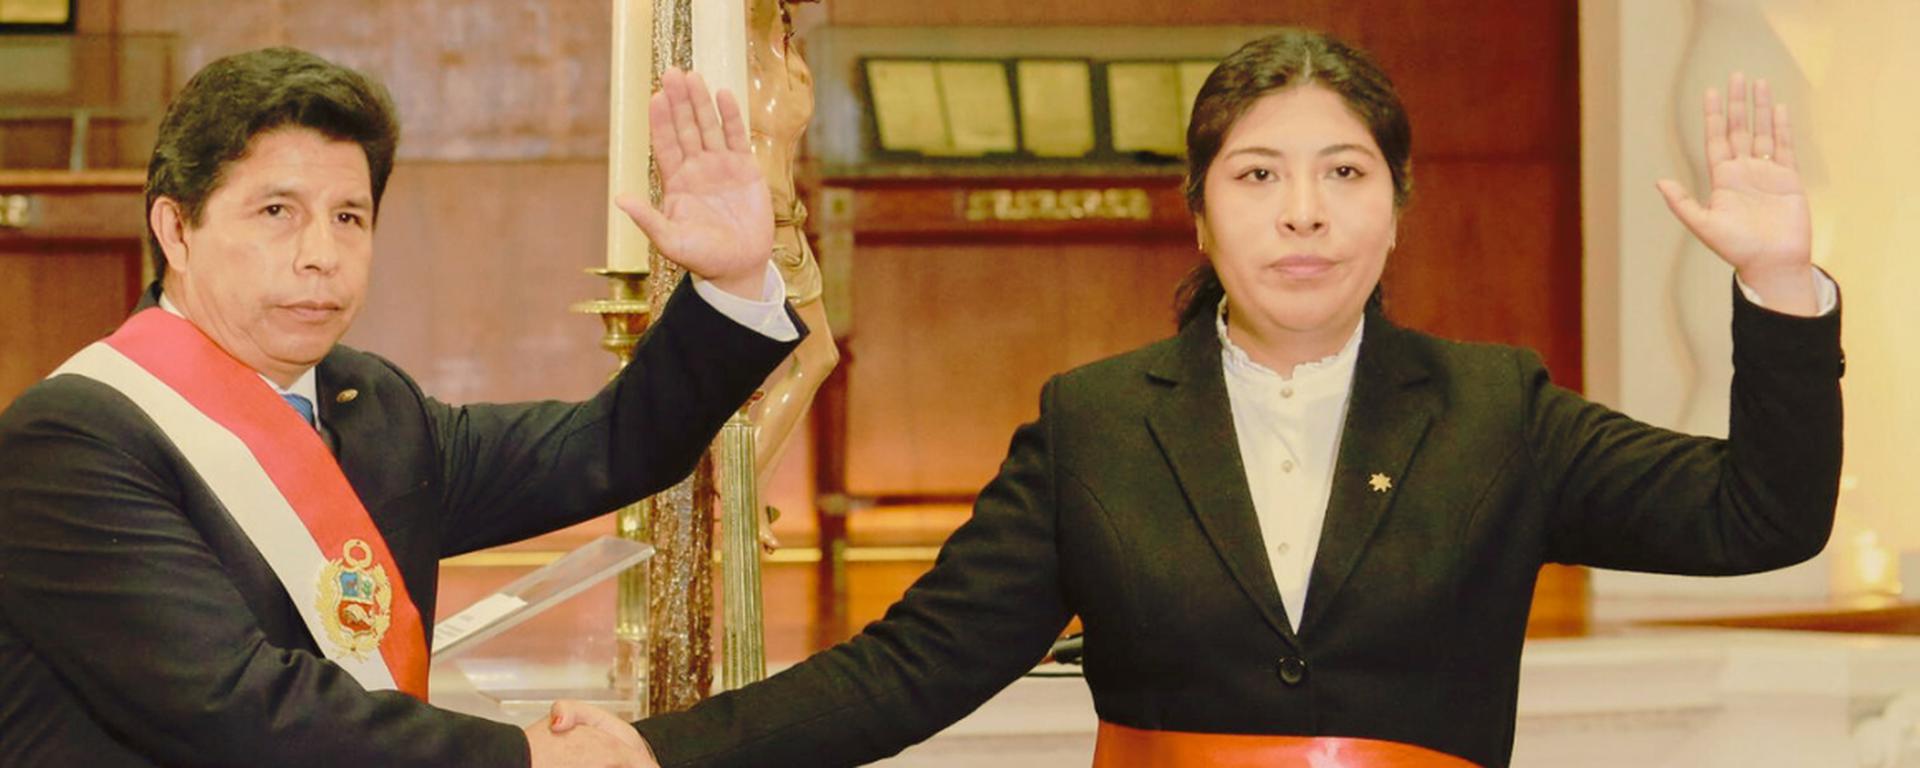 Cinco testigos apuntan a que Betssy Chávez buscó elaborar decreto para consumar golpe de Estado de Castillo